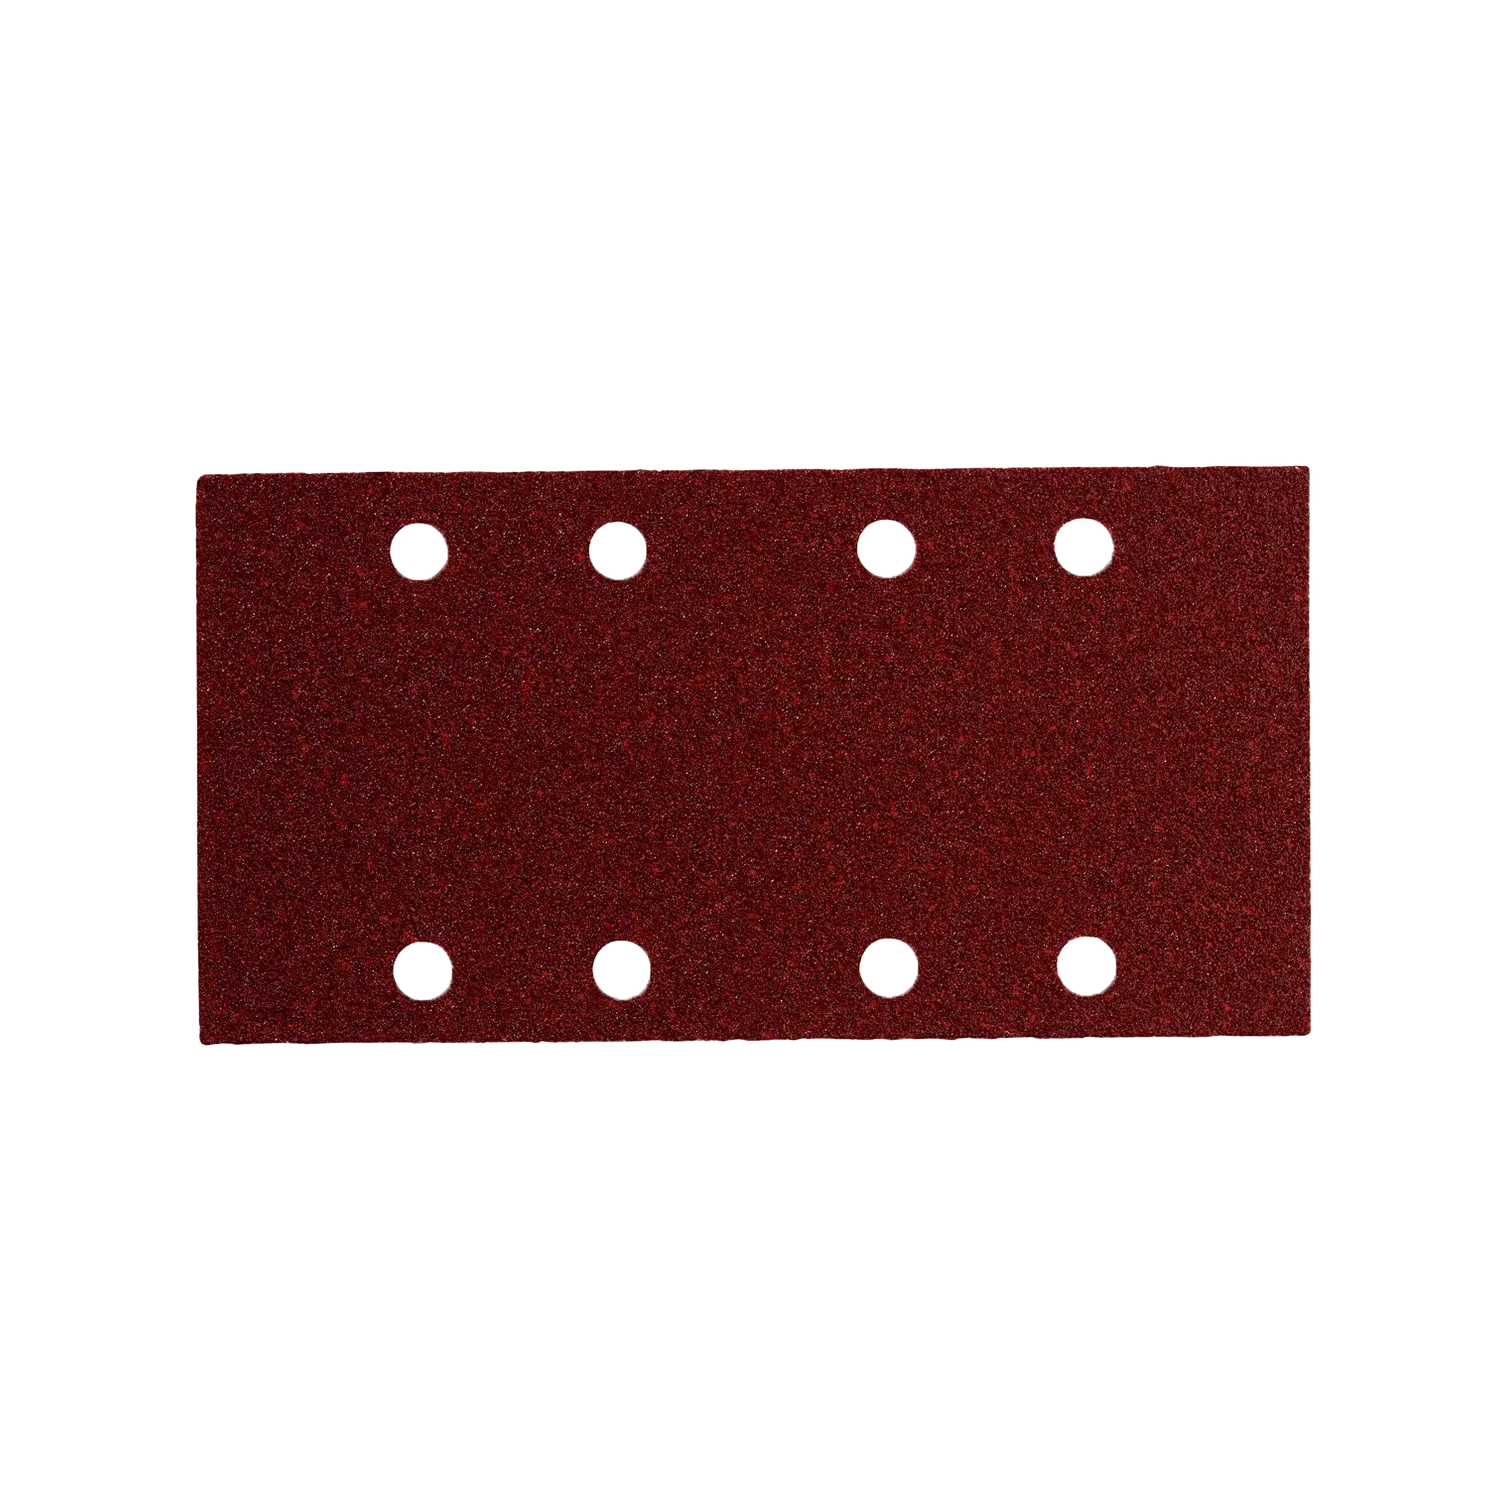 Donkerrood, rechthoekig K 60 METABO Velcro Schuurblad van 93X185mm. 8 gaatjes.